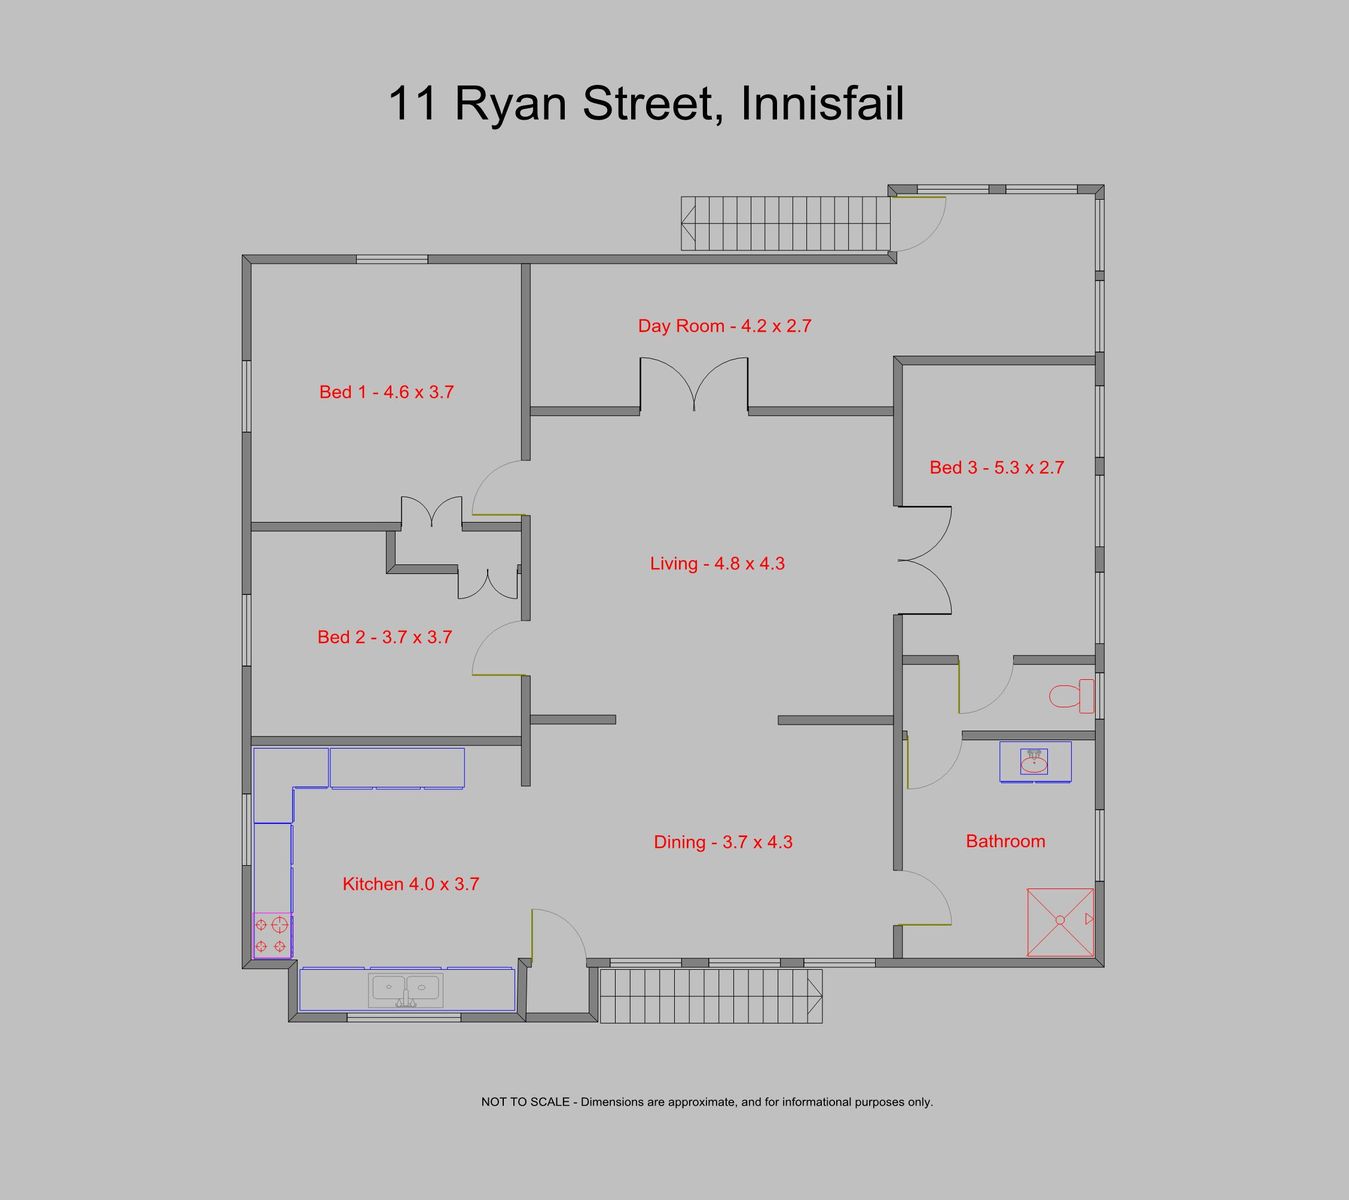 11 Ryan Street, Innisfail   Level 1